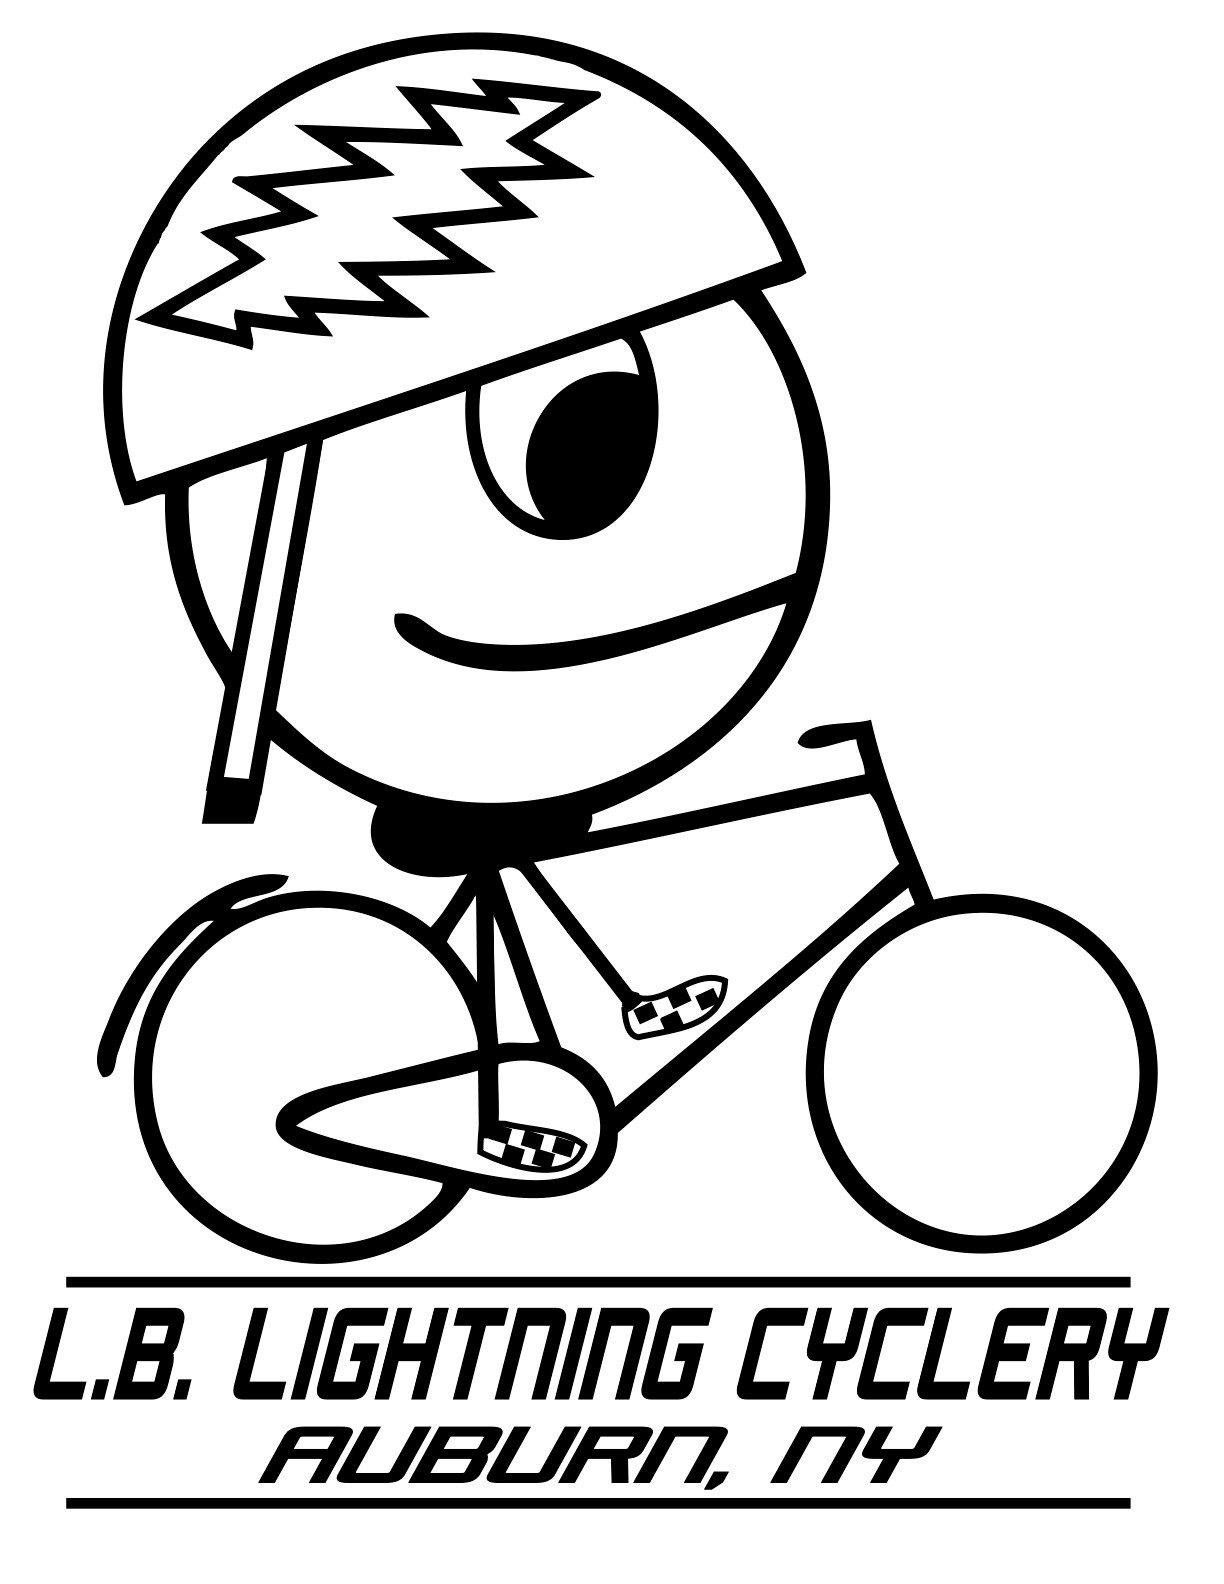 lightling cyclery auburn